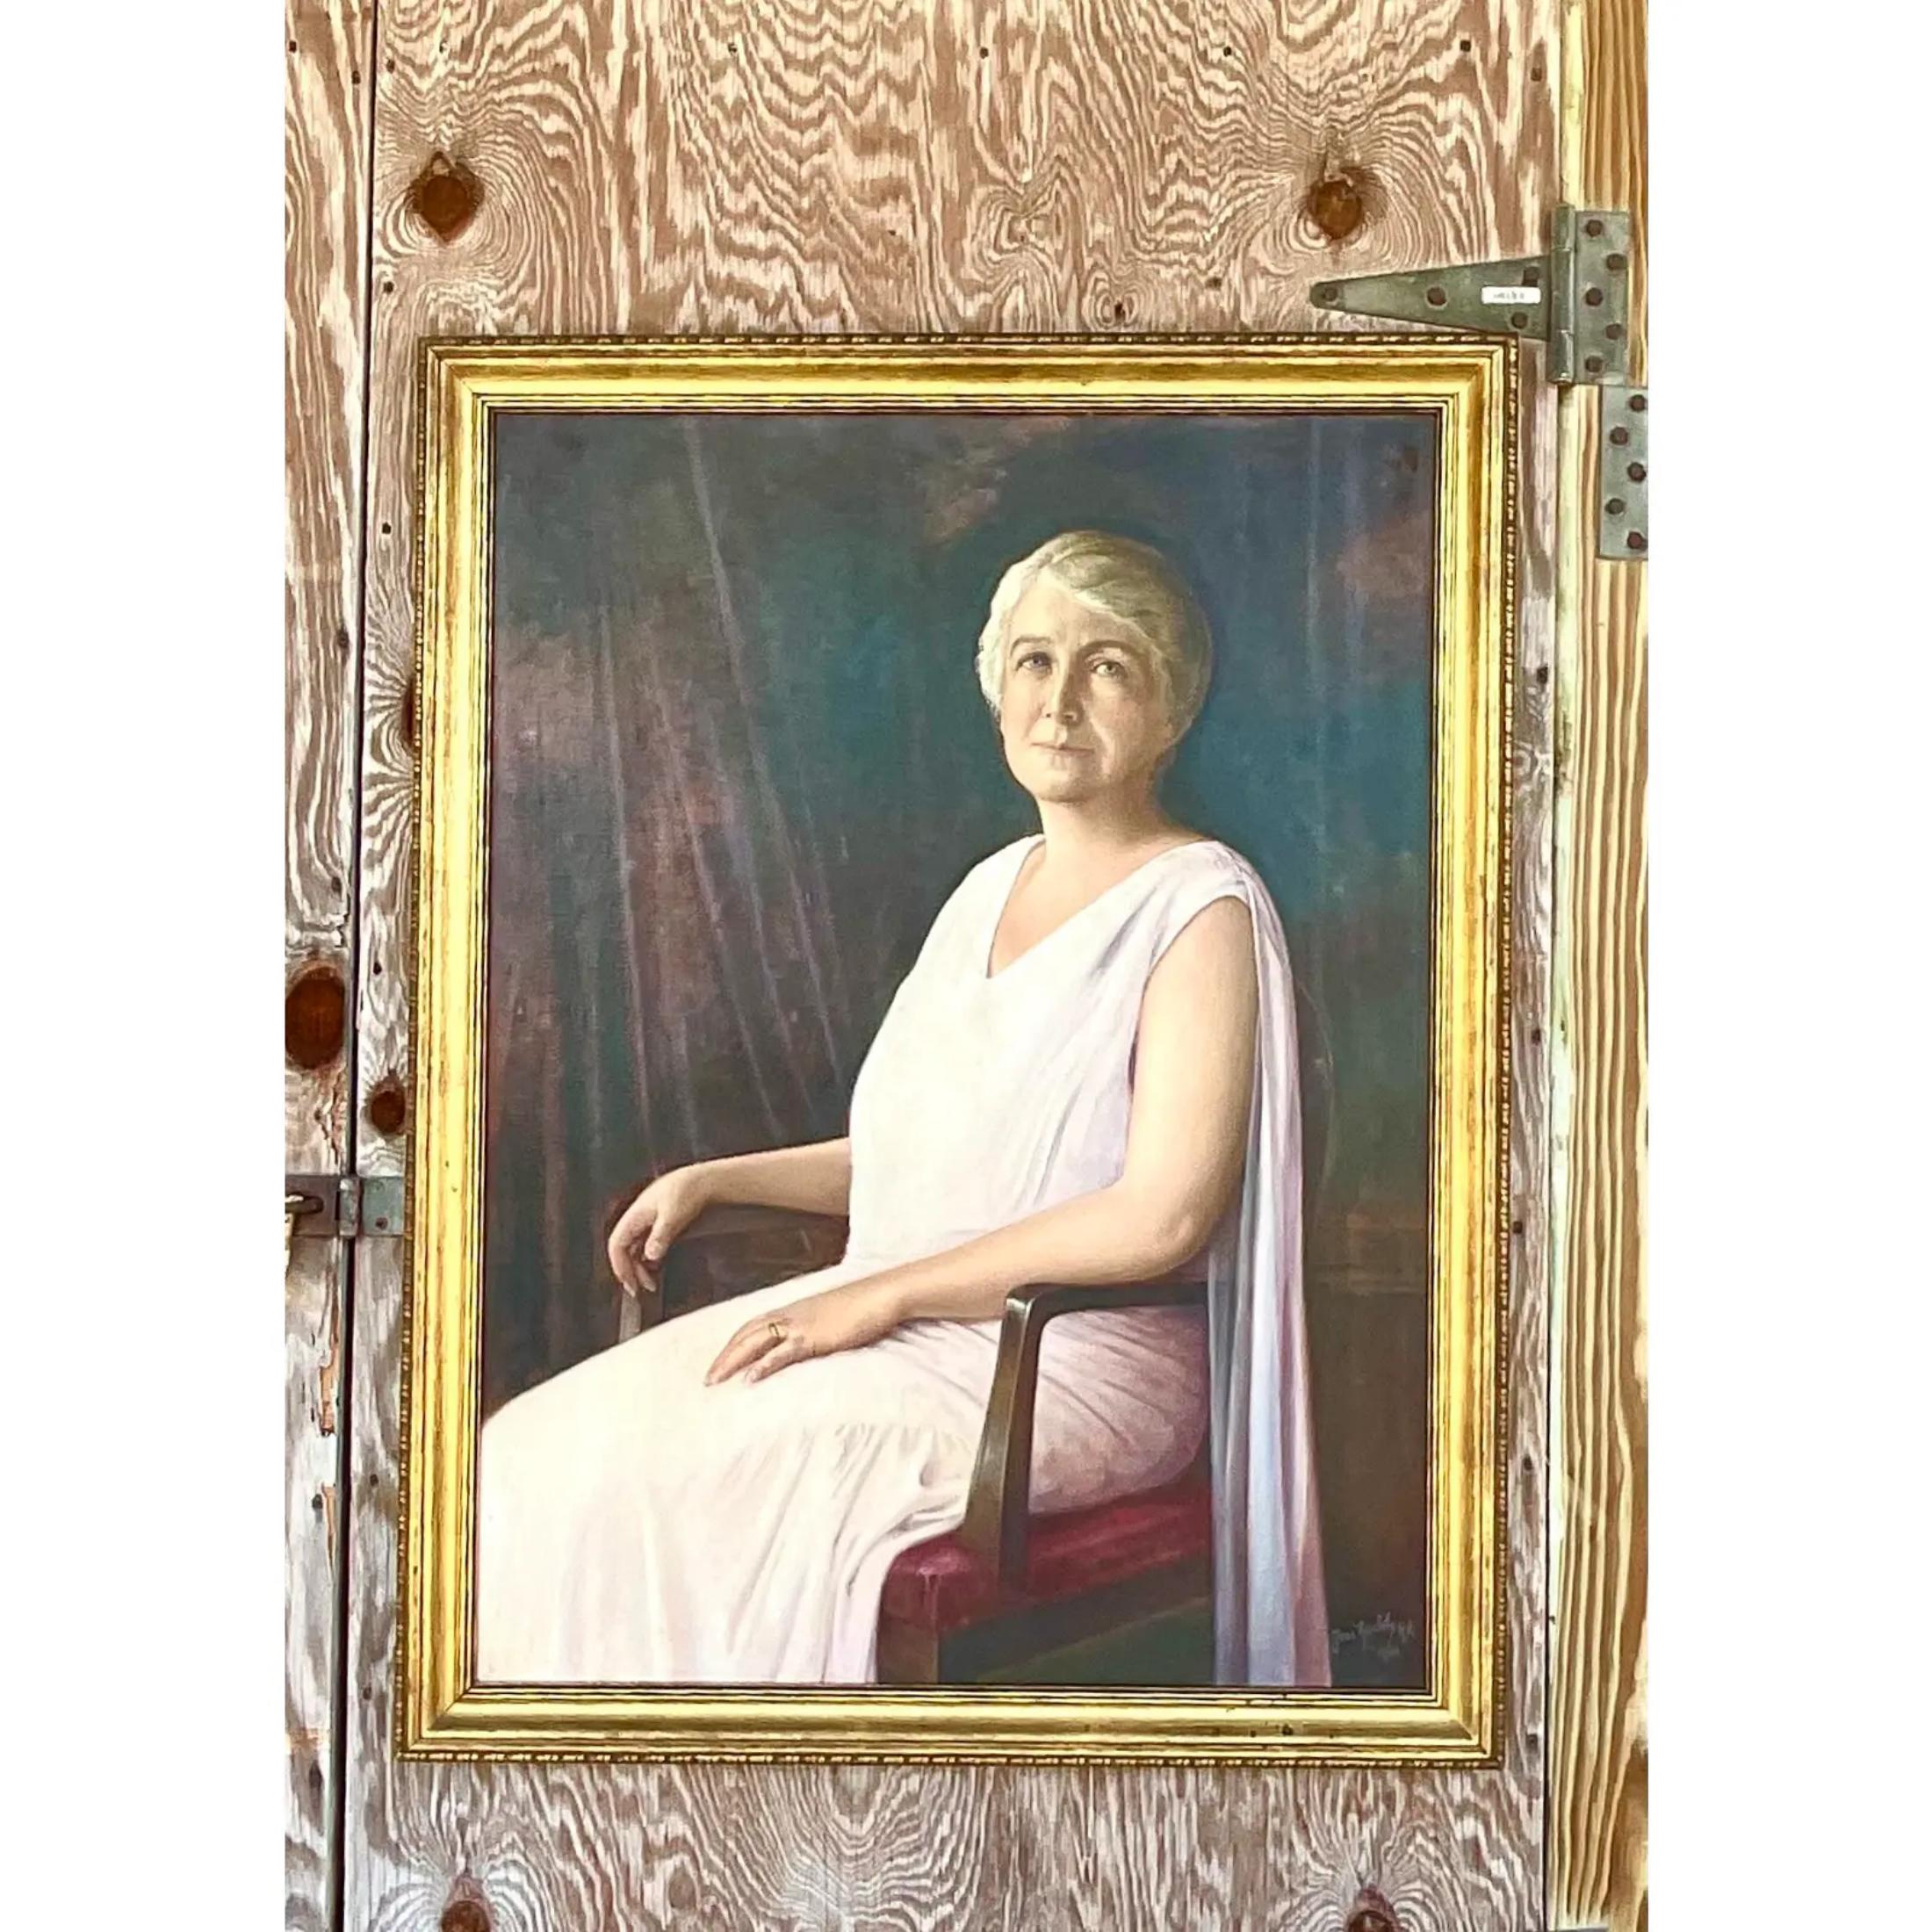 Fantastique portrait à l'huile original vintage. Une belle composition d'une dame élégante. Signé par l'artiste et daté de 1931. L'artiste, Jose Ruschty, a étudié à la Royal Academy of Art. L'insigne figure dans la signature de l'artiste. Acquis